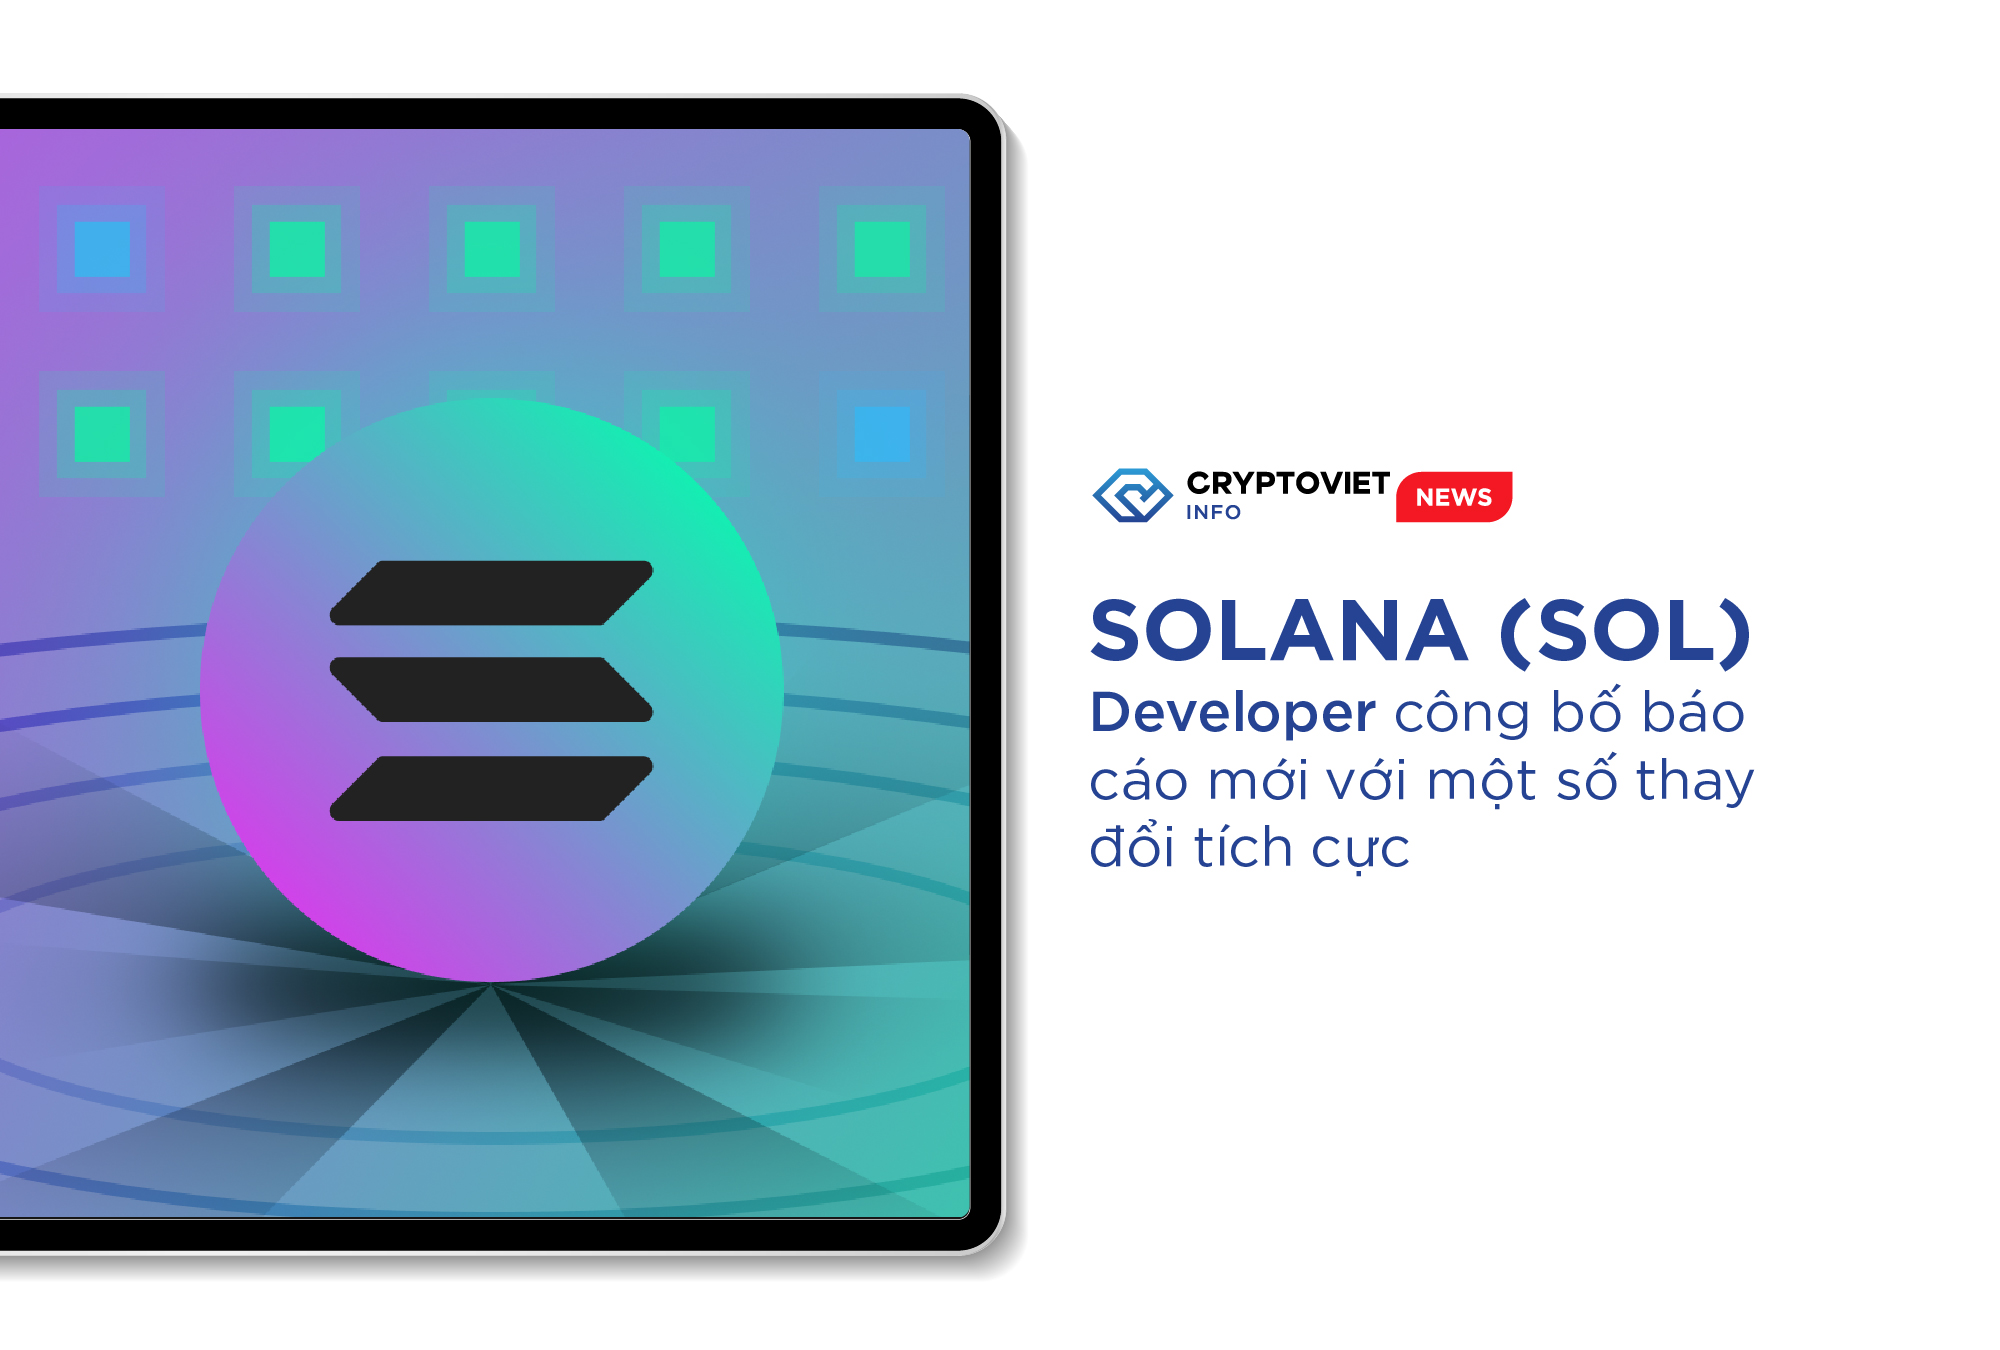 Solana (SOL) Developer công bố báo cáo mới với một số thay đổi tích cực